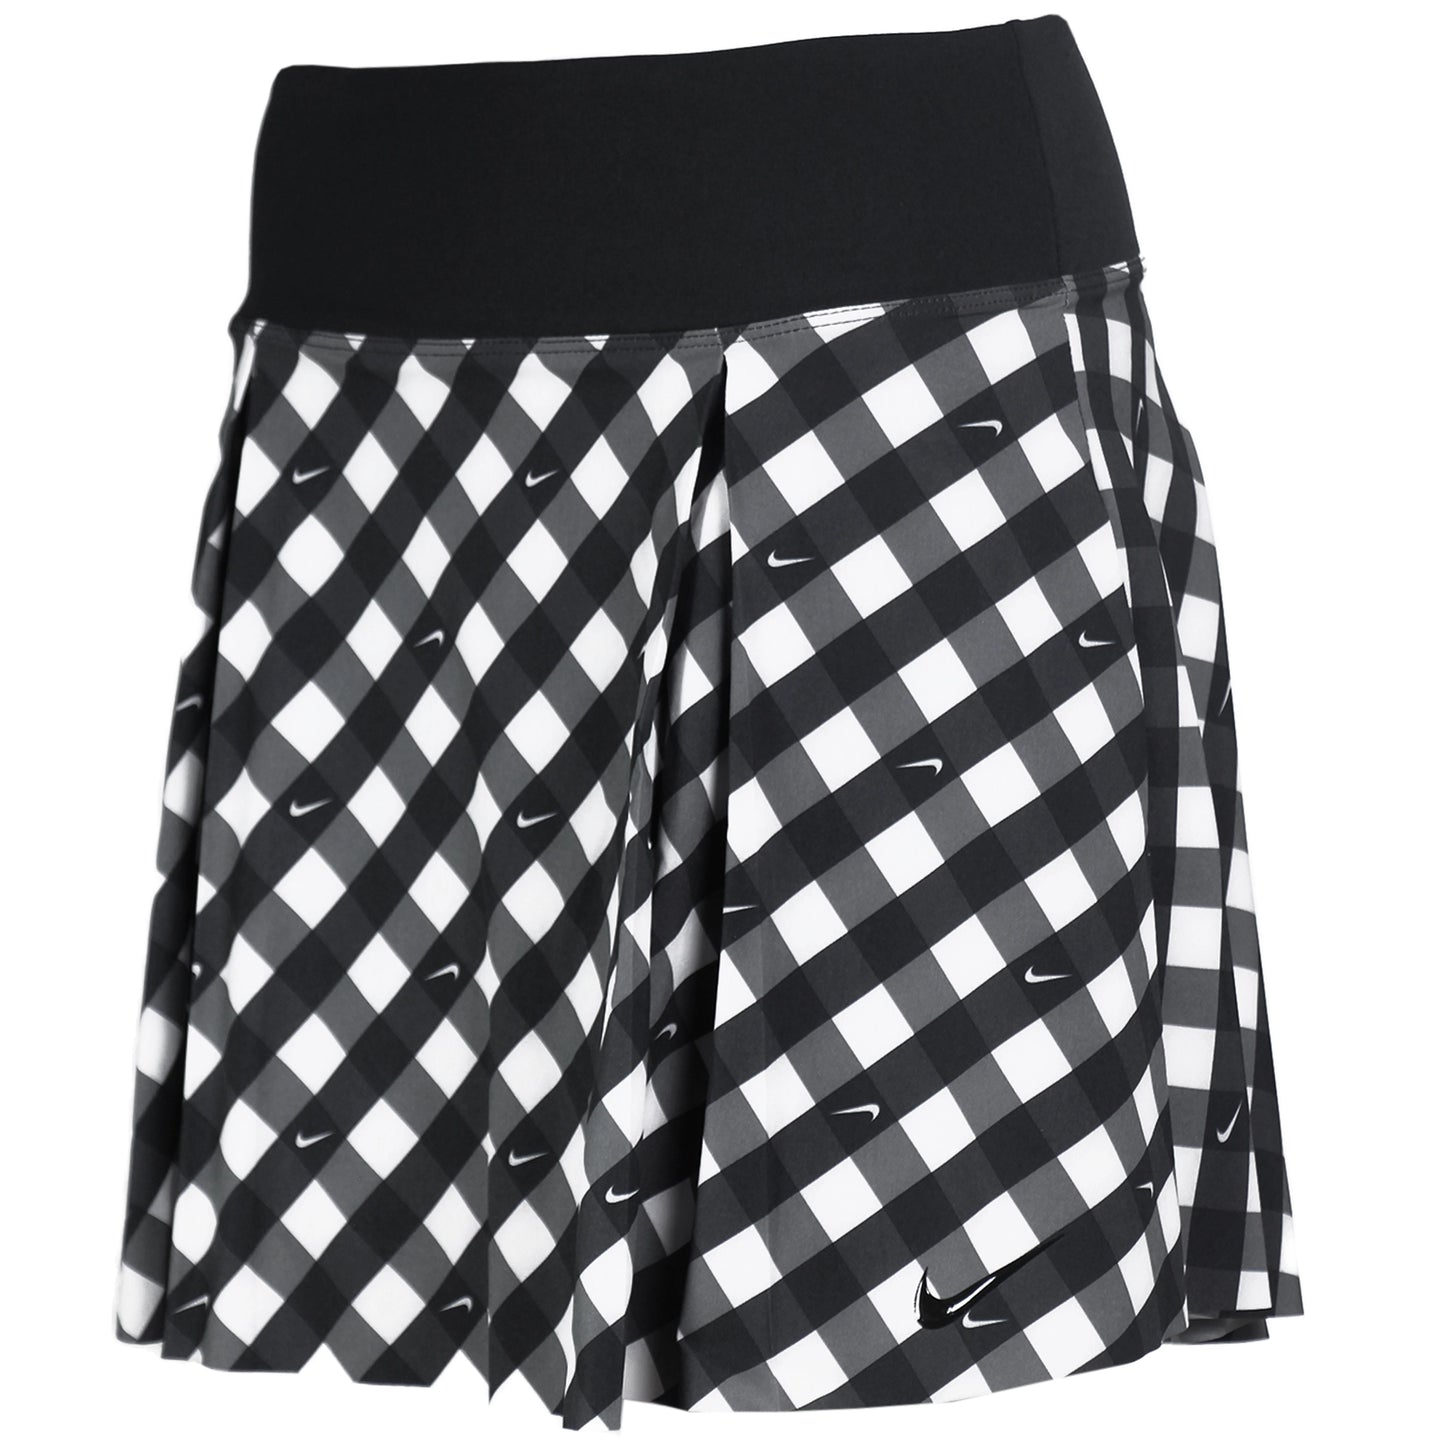 Nike Women's Dri-Fit Club Skirt Regular Print DX1142-010